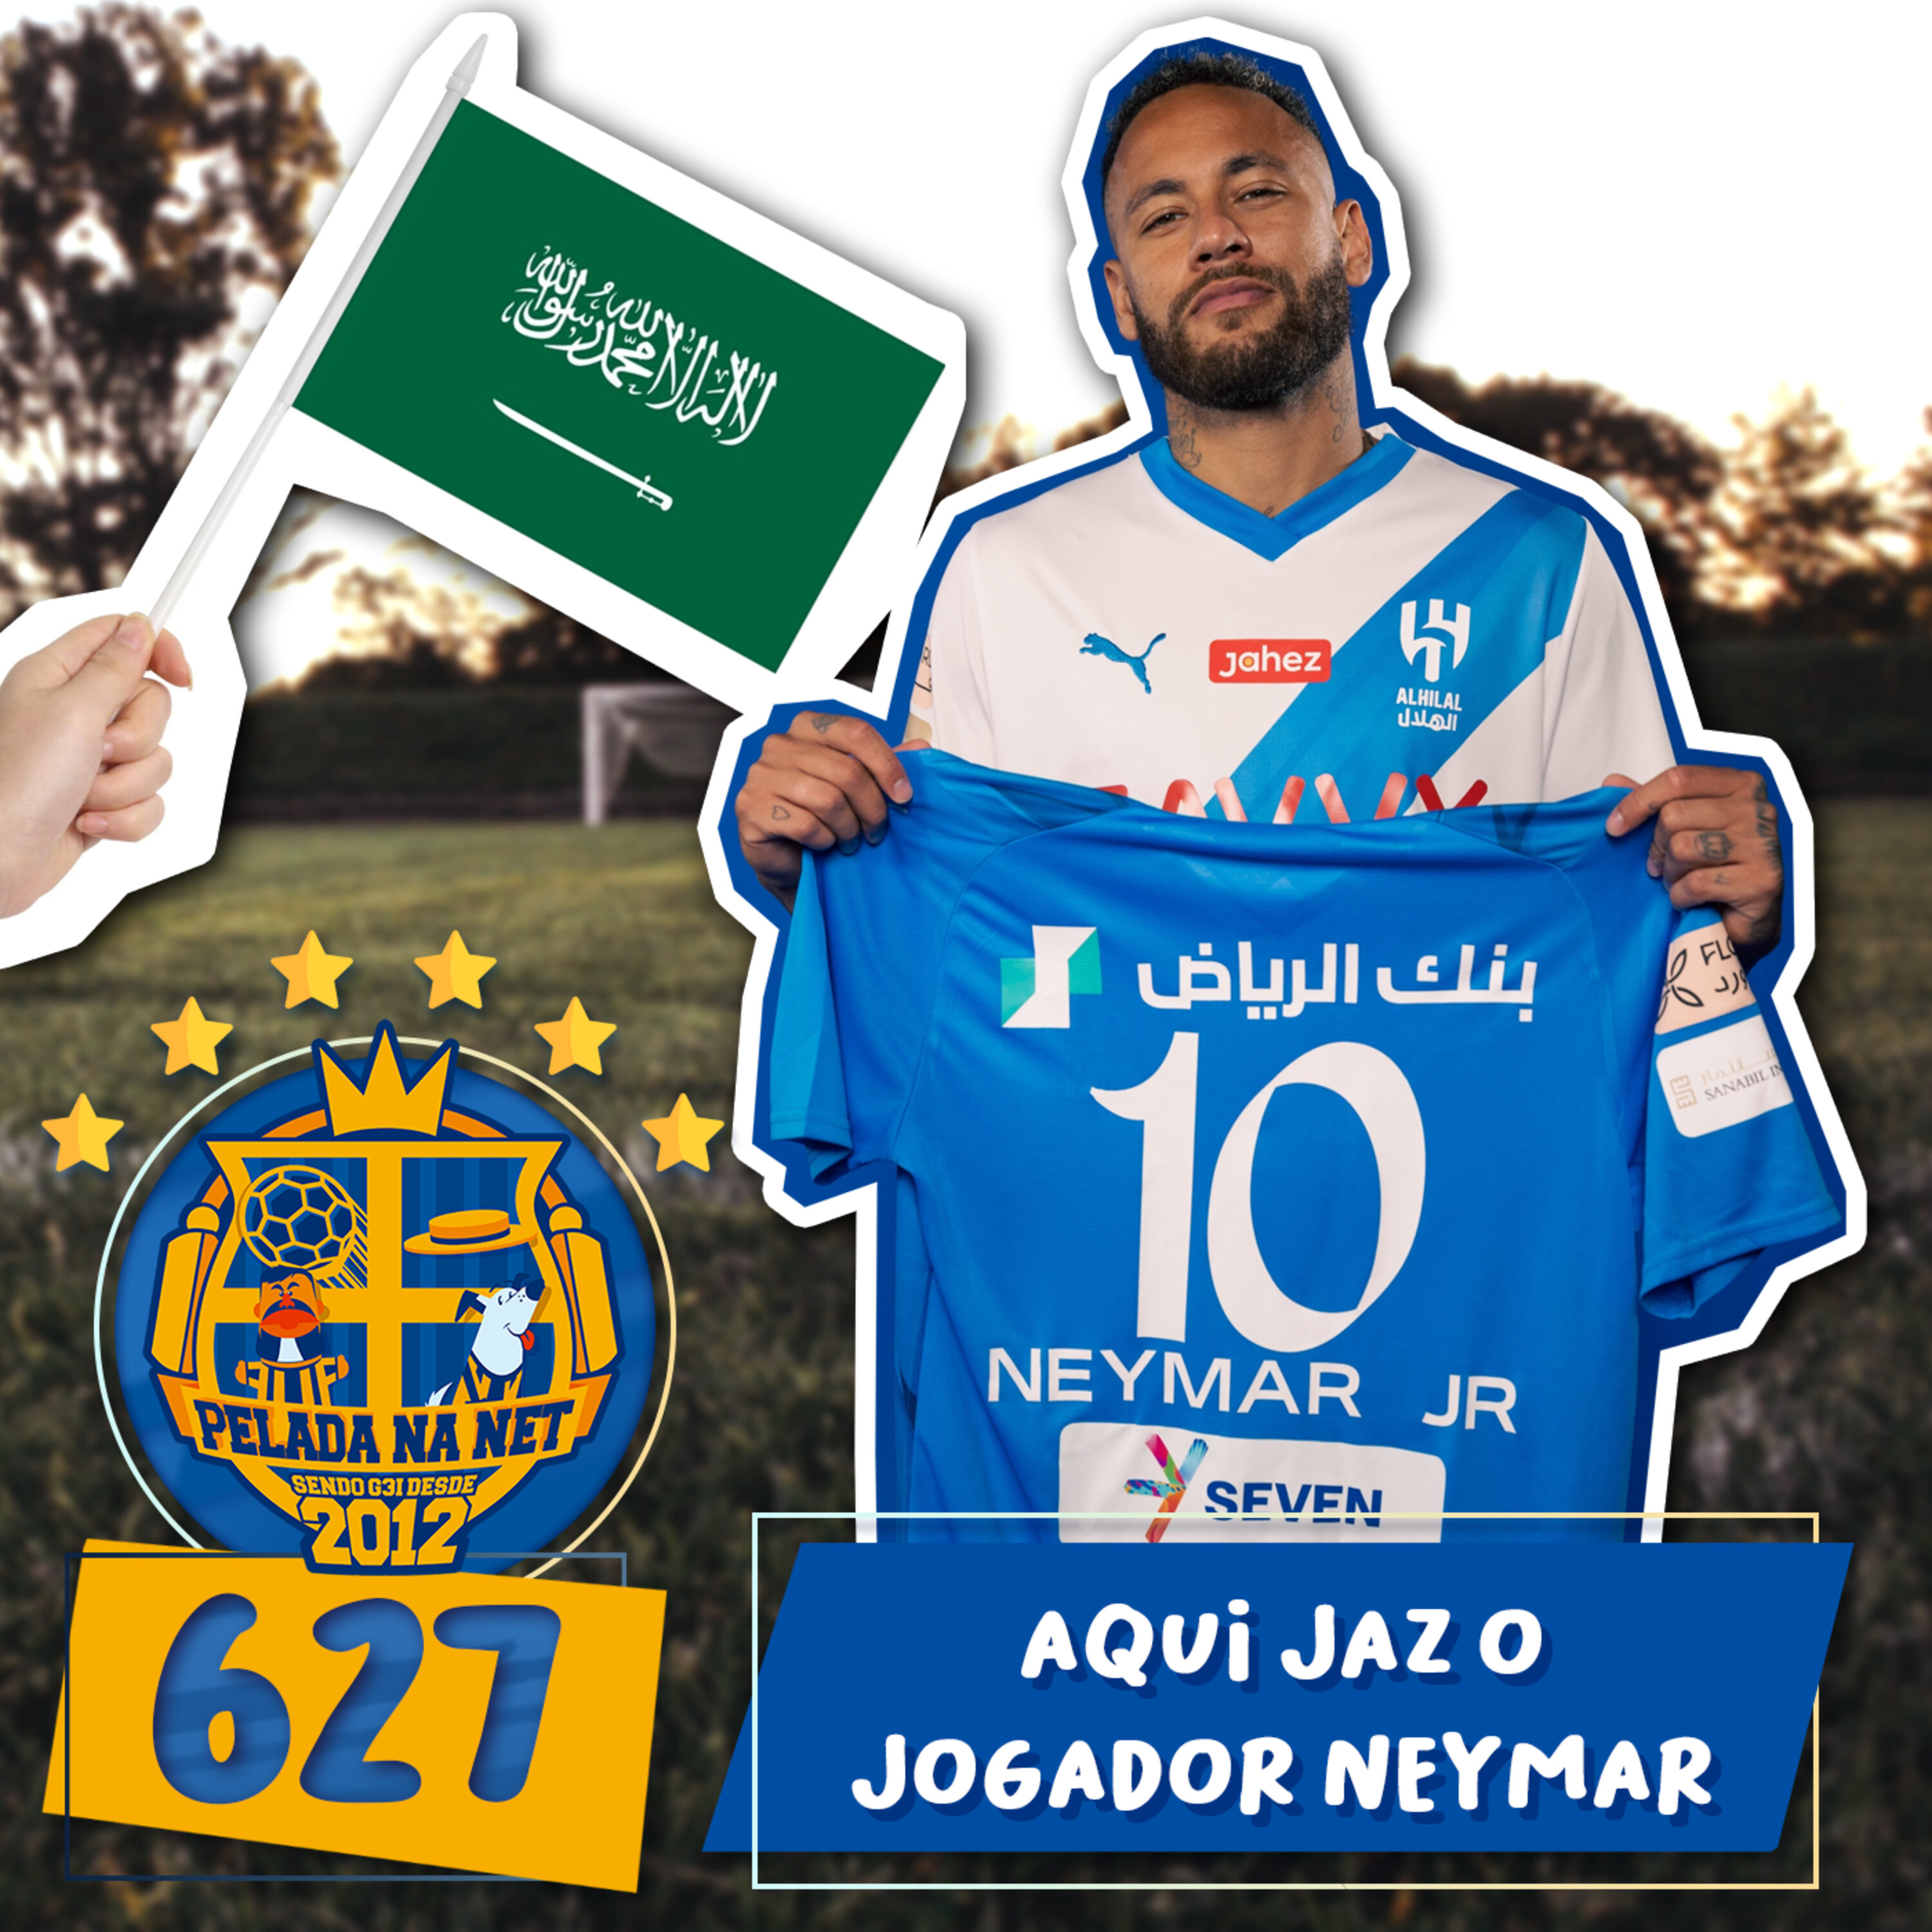 Pelada na Net #627 - Aqui Jaz O Jogador Neymar